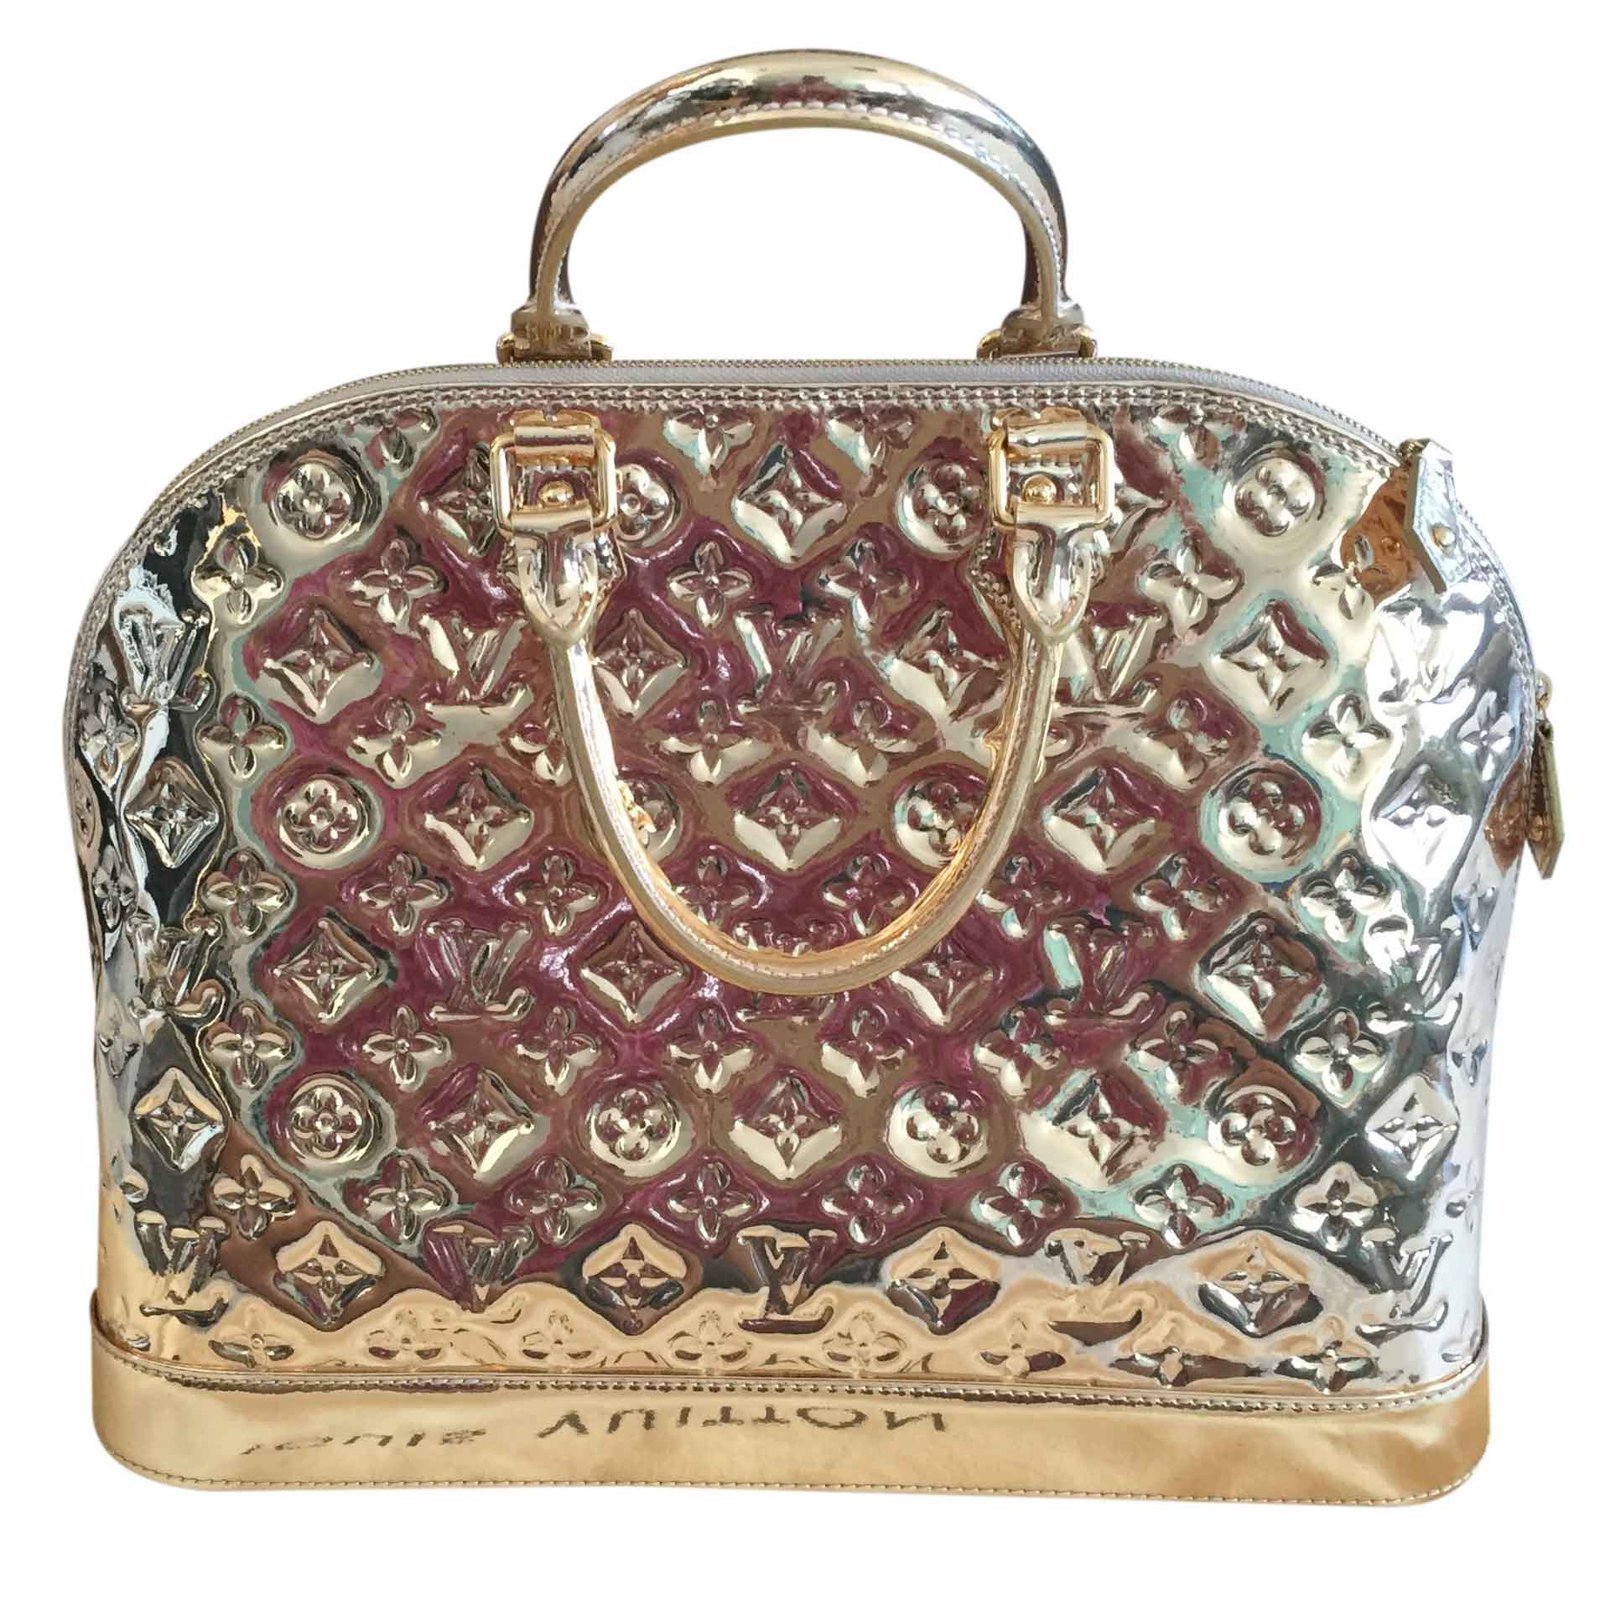 Las mejores ofertas en Bolsas de Metal Oro Louis Vuitton y bolsos para Mujer